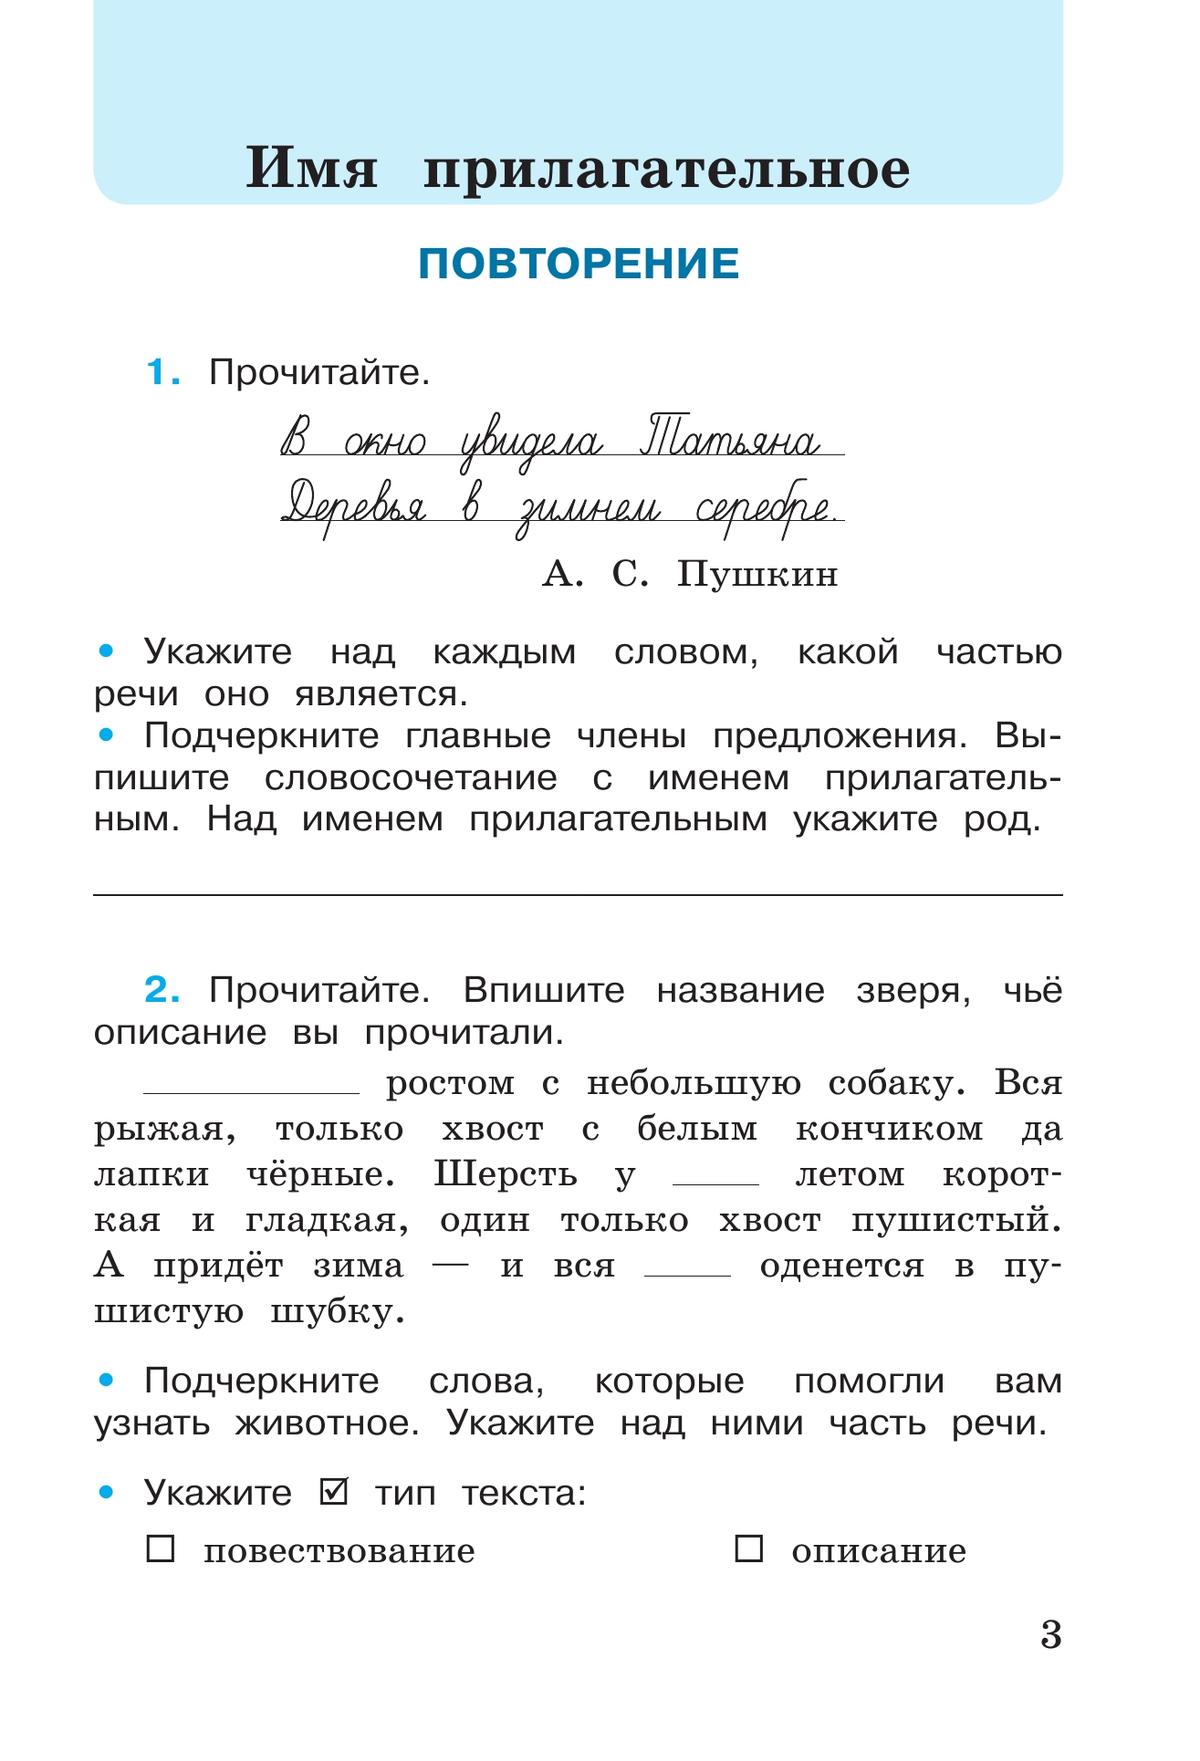 Русский язык. Рабочая тетрадь. 4 класс. В 2-х ч. Ч. 2 4